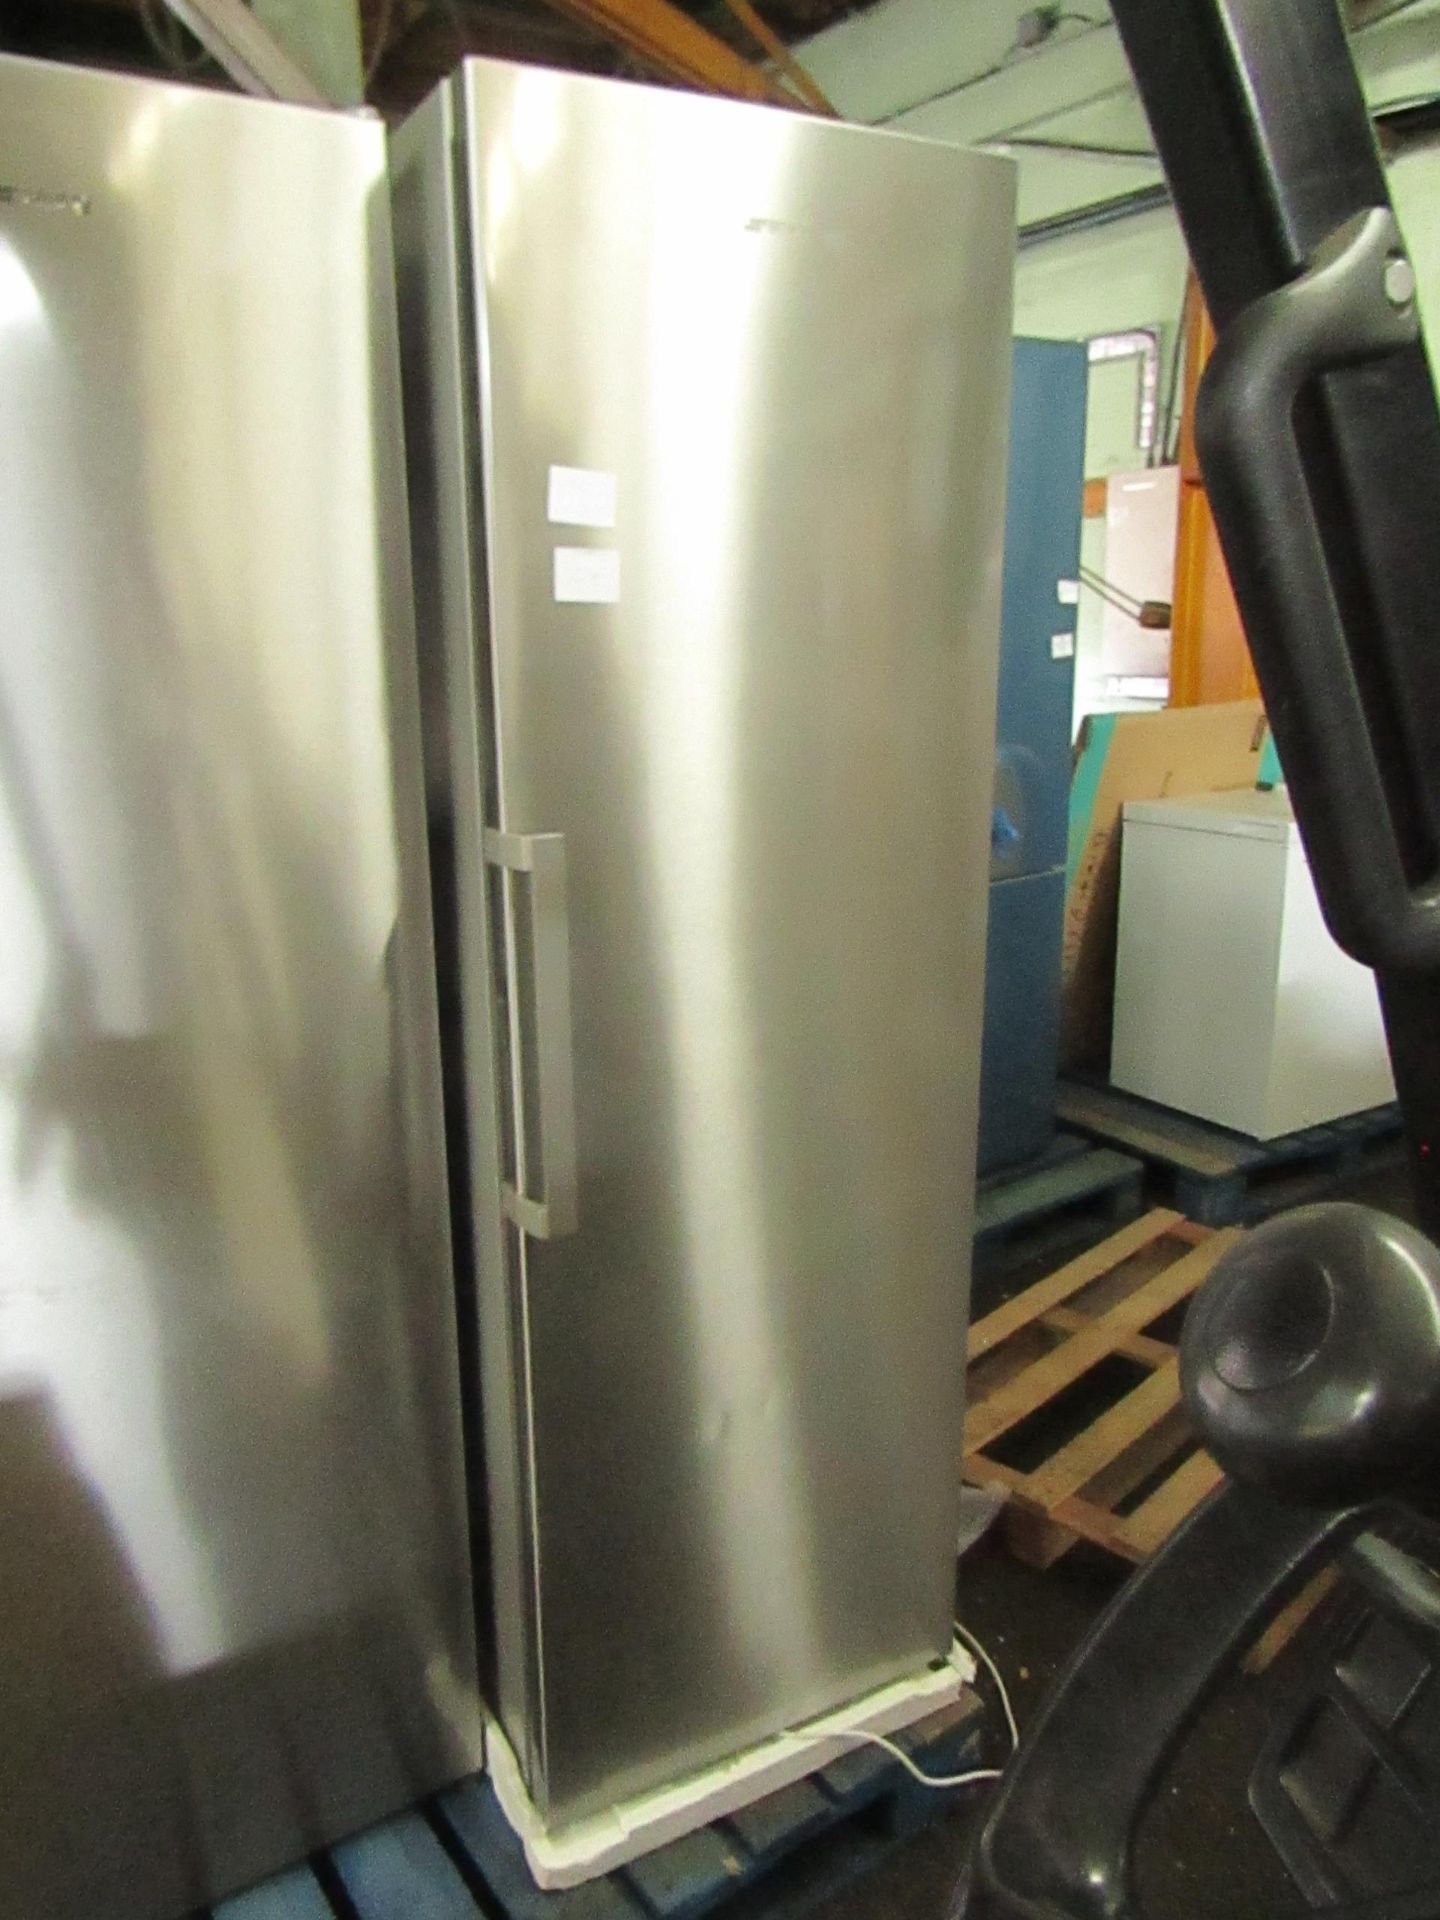 Smeg freestanding fridge, tested working.